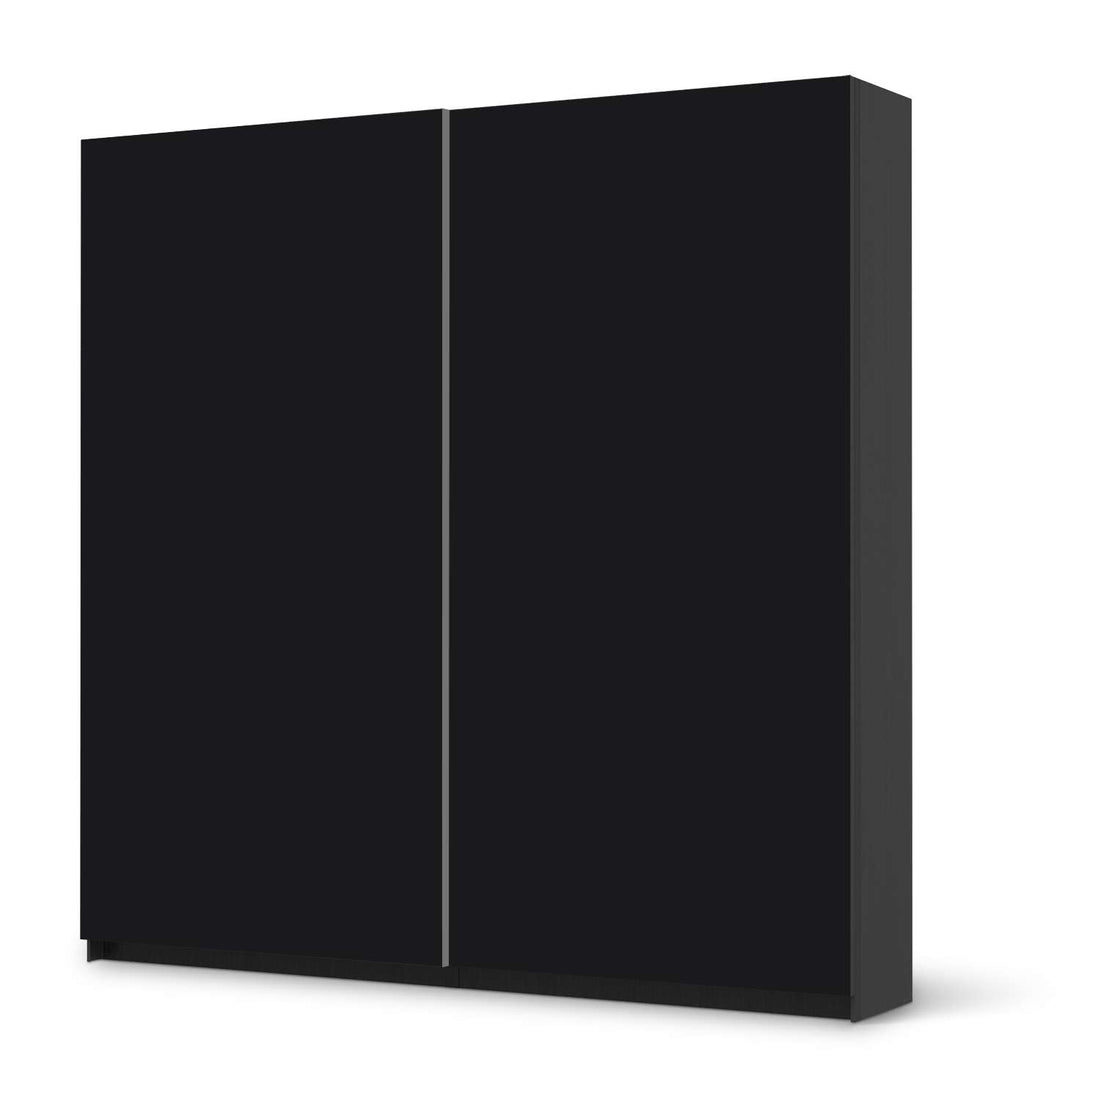 Möbel Klebefolie Schwarz - IKEA Pax Schrank 201 cm Höhe - Schiebetür - schwarz